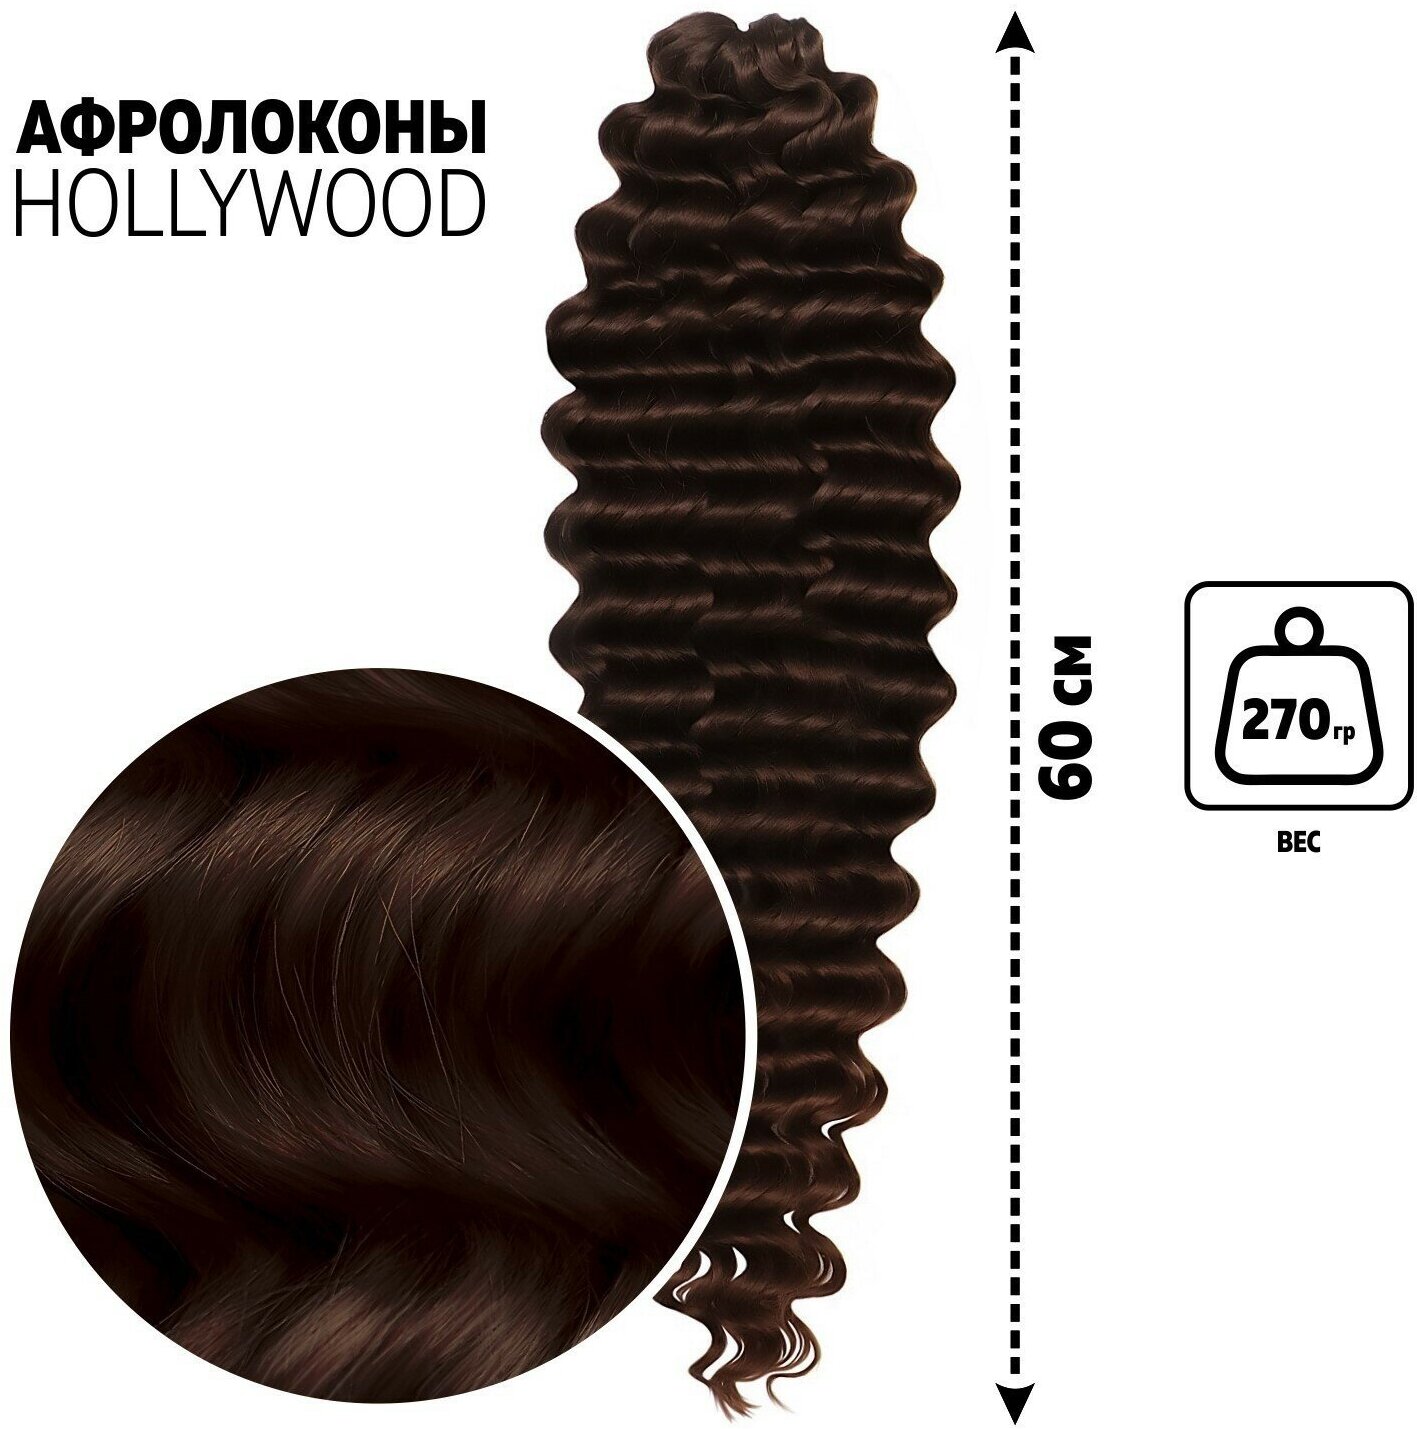 Голливуд Афролоконы, 60 см, 270 гр, цвет шоколадный/тёмный шоколад HKB4/33А (Катрин) (1шт.)